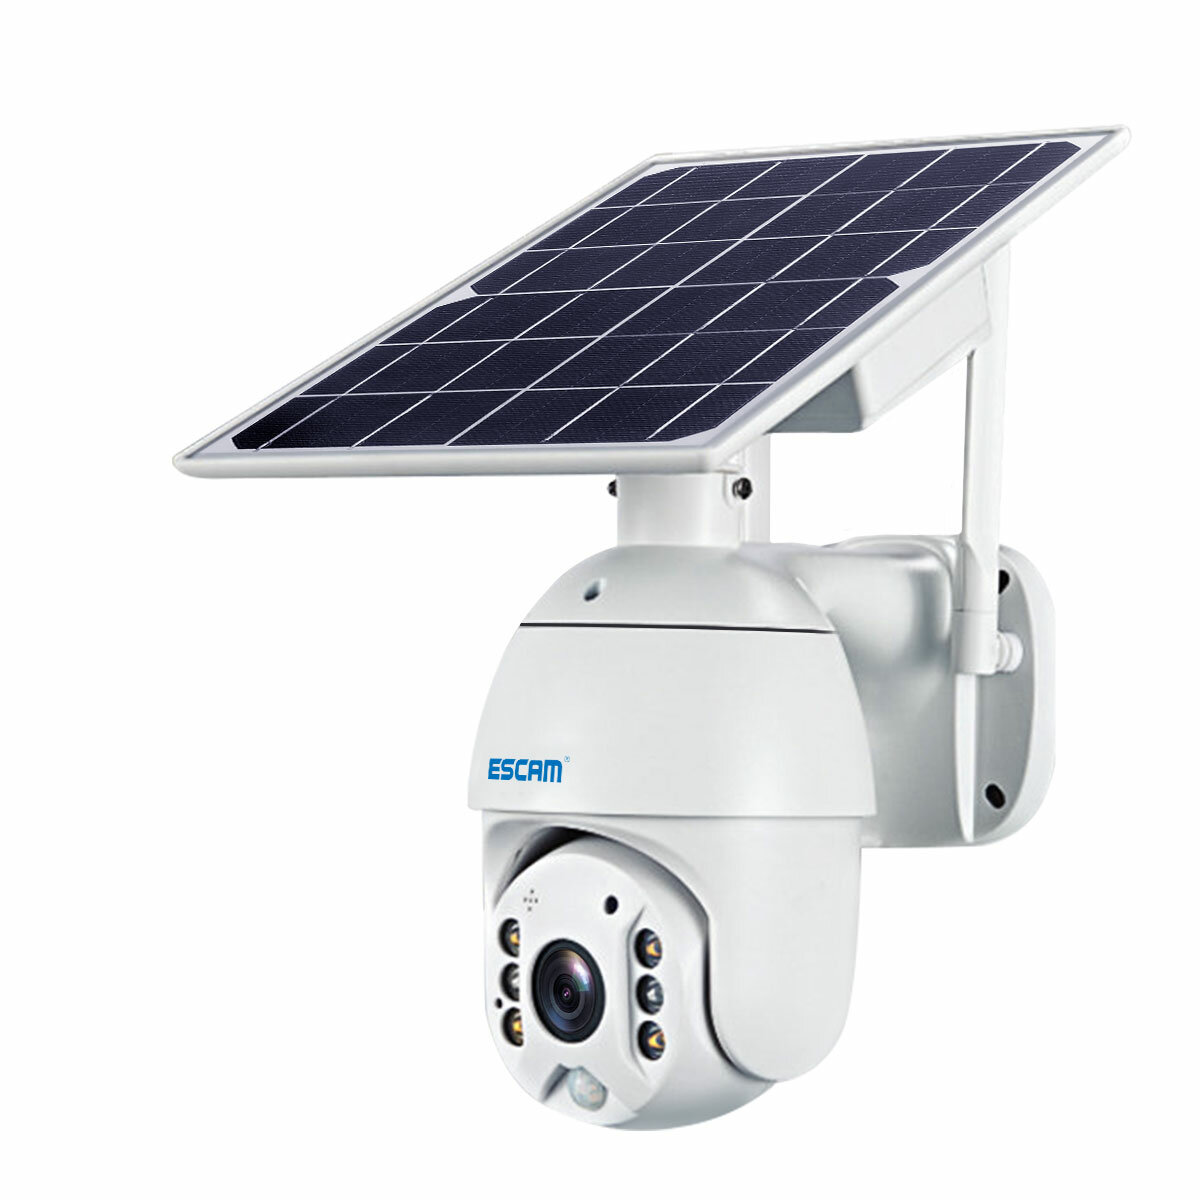 Kamera IP ESCAM QF480 z panelem solarnym z Polski za $124.99 / ~492zł